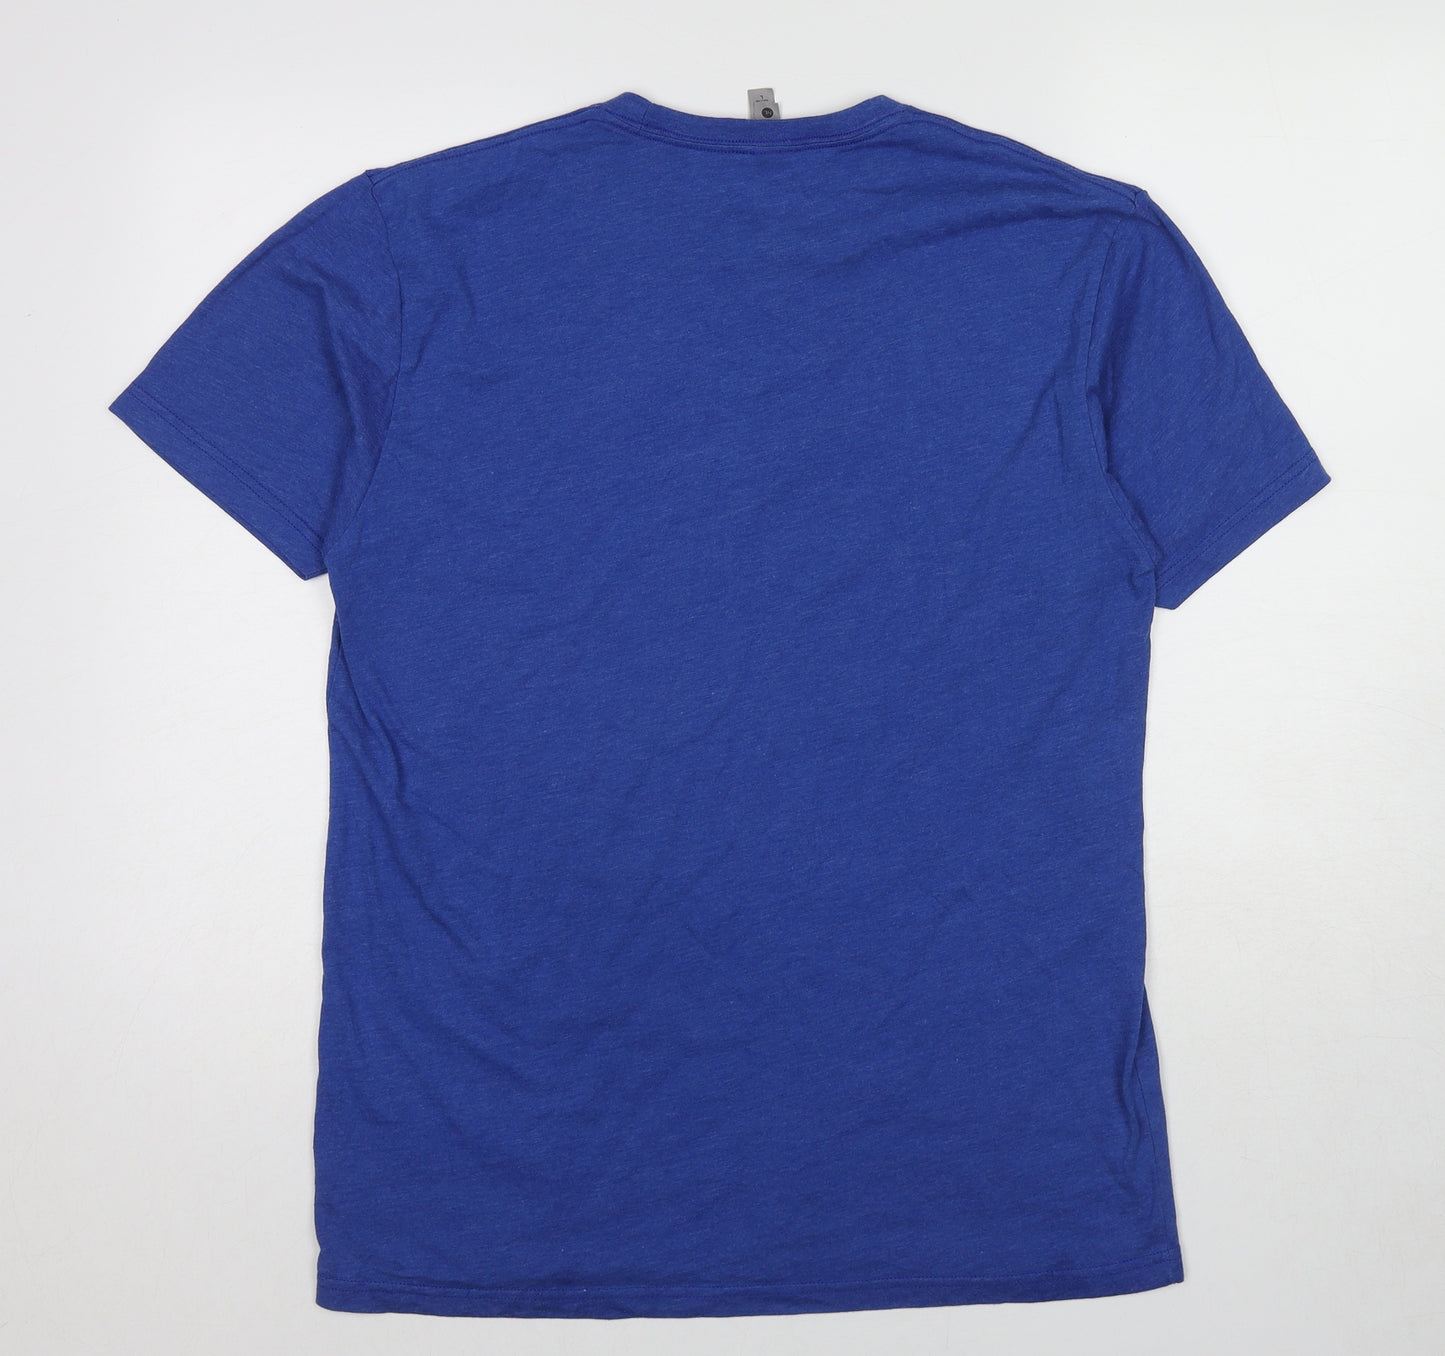 Next Level Mens Blue Cotton T-Shirt Size XL Round Neck